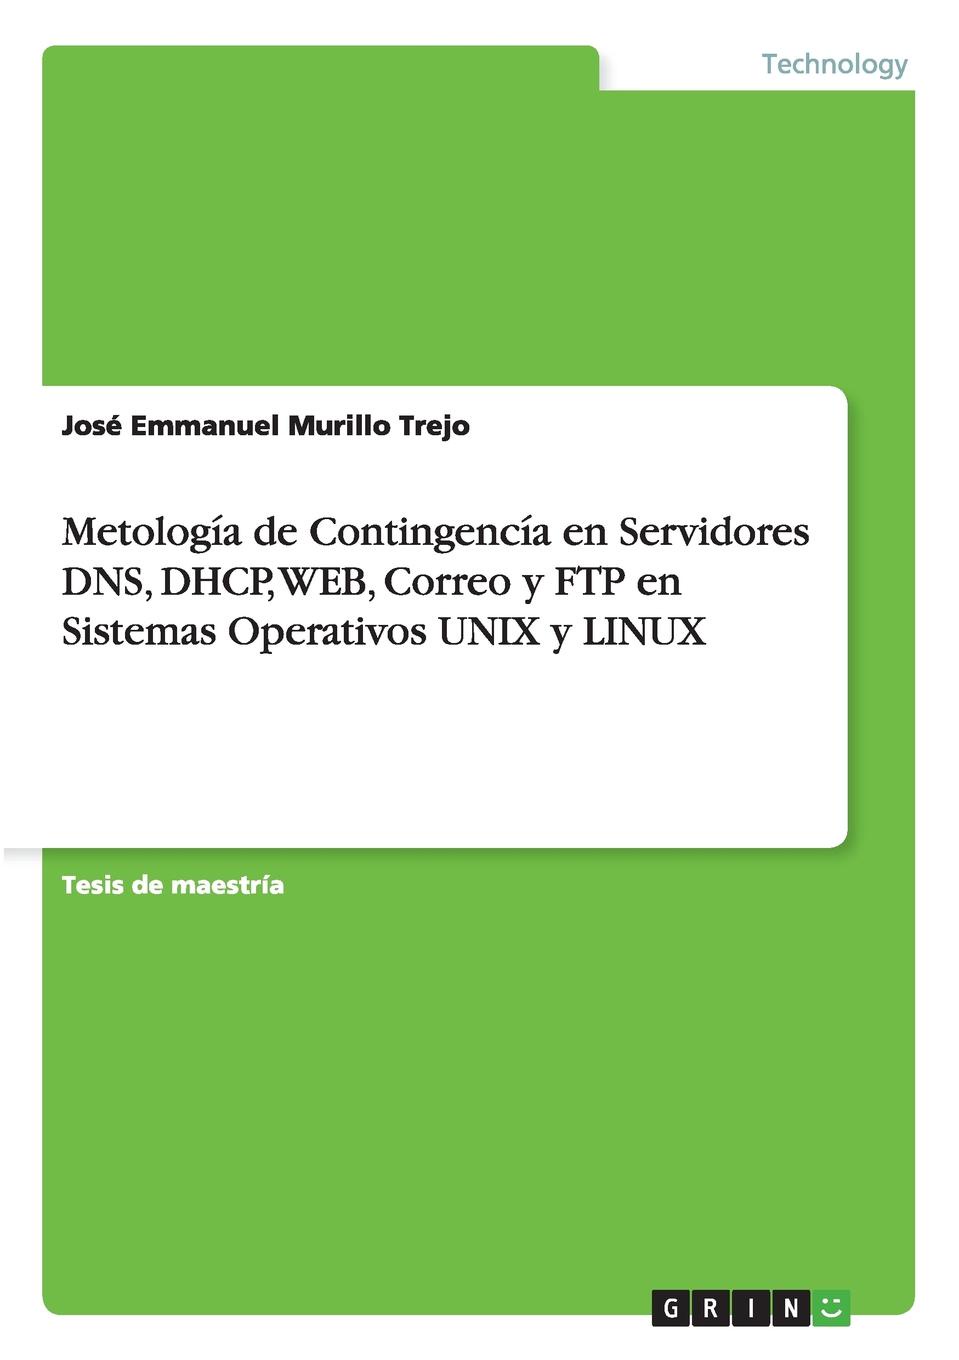 Metologia de Contingencia en Servidores DNS, DHCP, WEB, Correo y FTP en Sistemas Operativos UNIX y LINUX